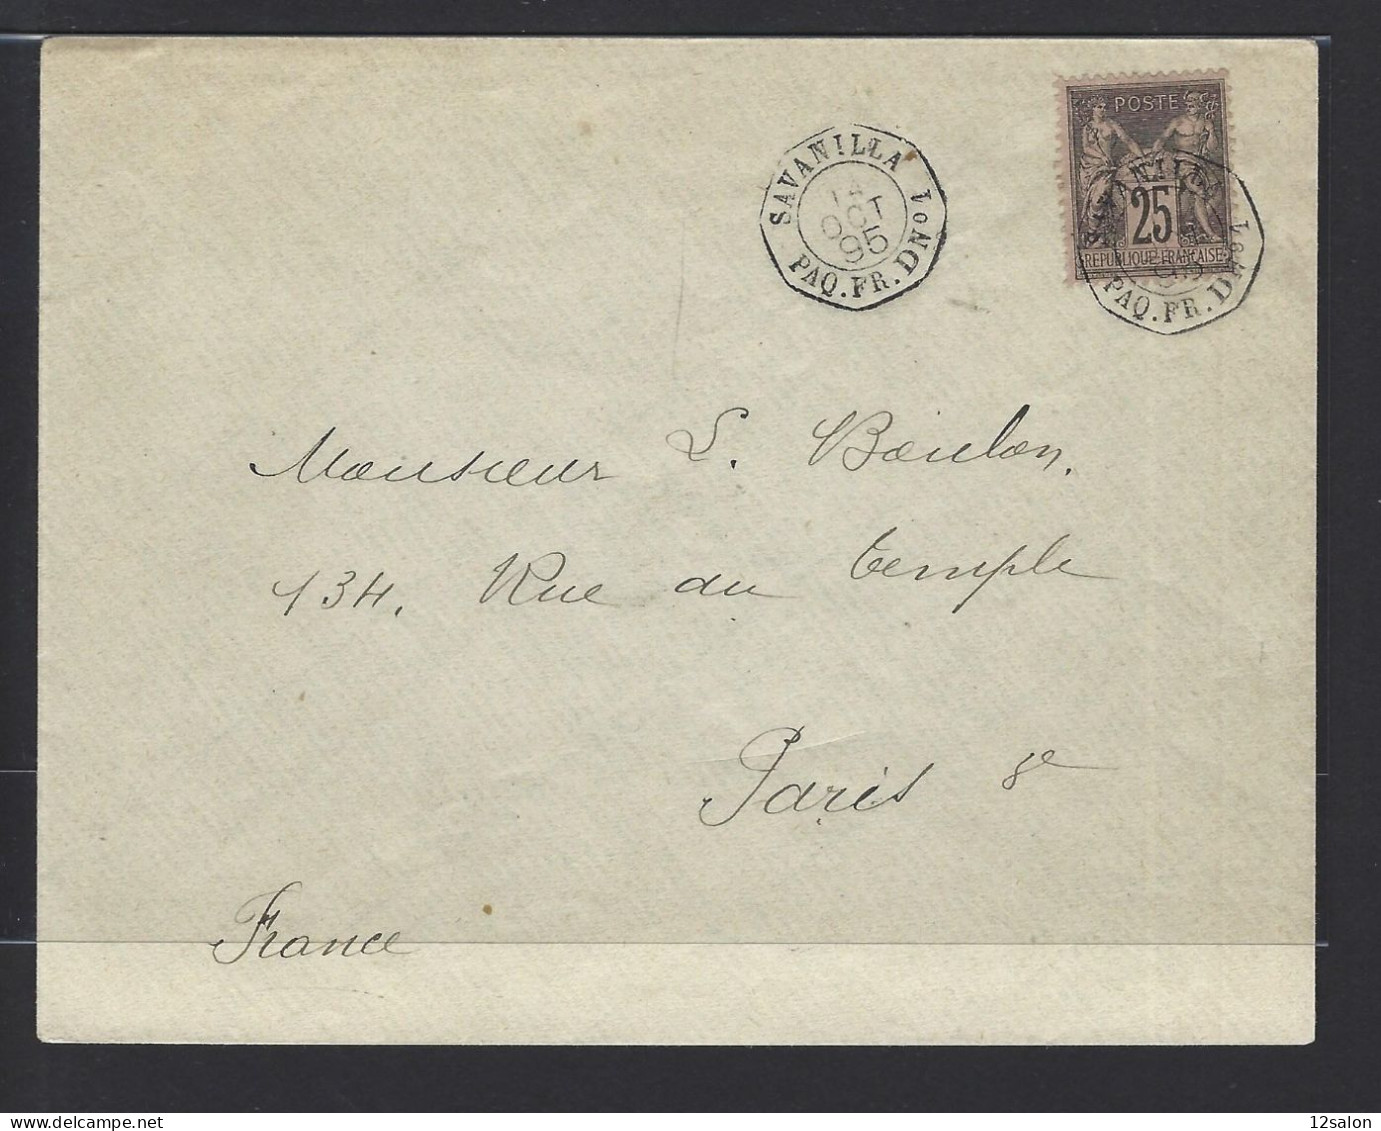 MARITIME SAGE N°97 OBL CAD Octogone Sur La Pointe "Savanilla Paq FR D N°1" (1895) Répété à Côté (Salles N°1505 - Ind 20) - Schiffspost